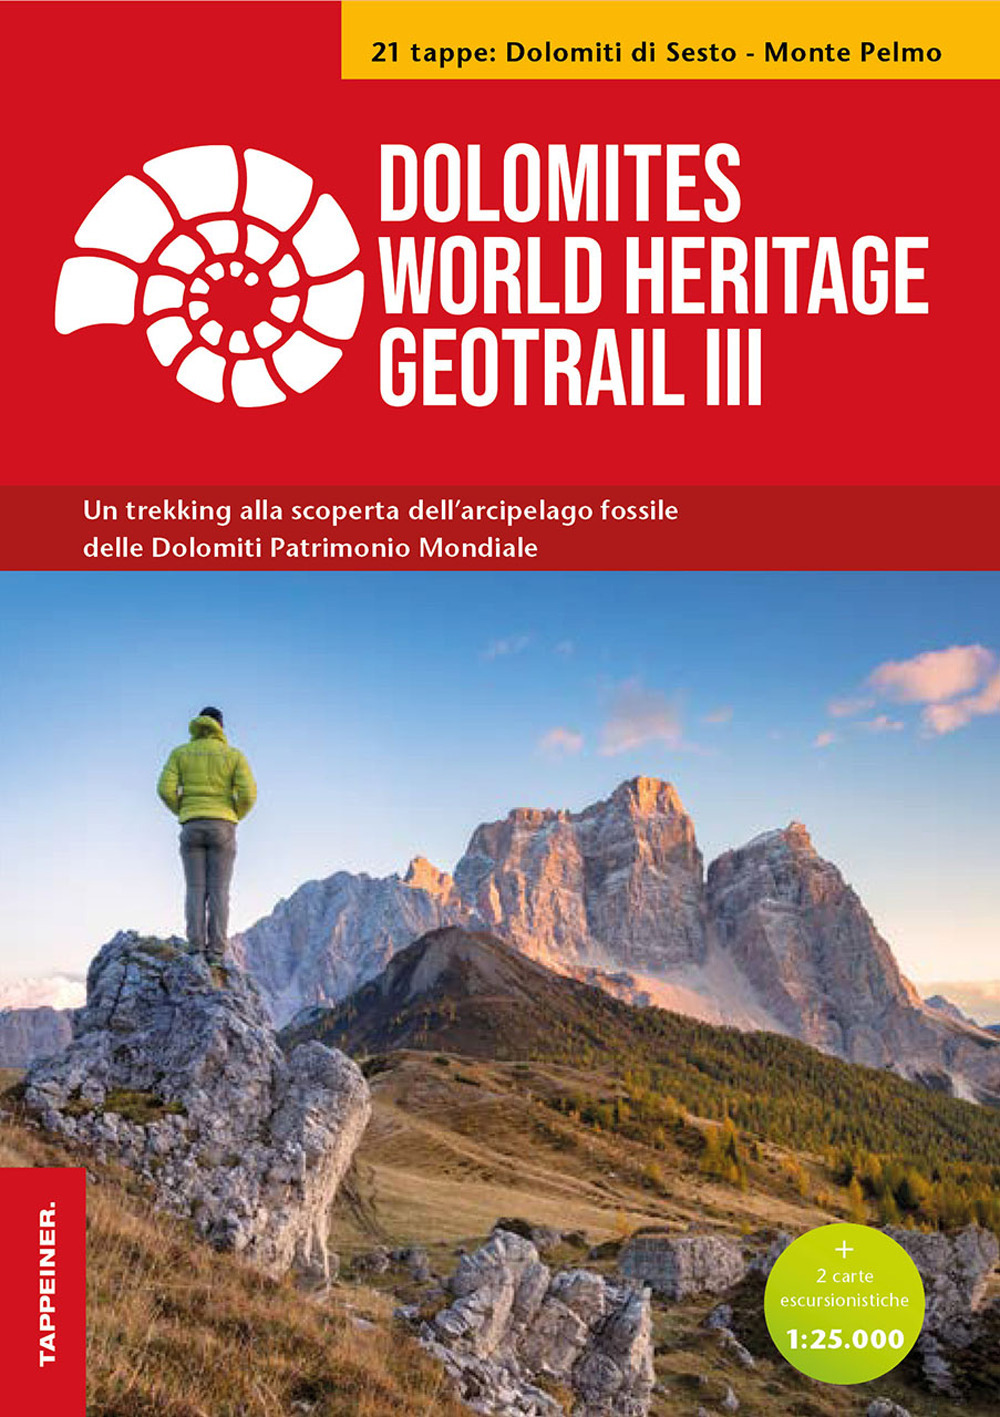 Dolomites World Heritage geotrail. Un trekking alla scoperta dell'arcipelago fossile del Patrimonio mondiale. Con 2 carte escursionistiche 1:25.000. Vol. 3: Dolomiti di Sesto-Monte Pelmo (Veneto)